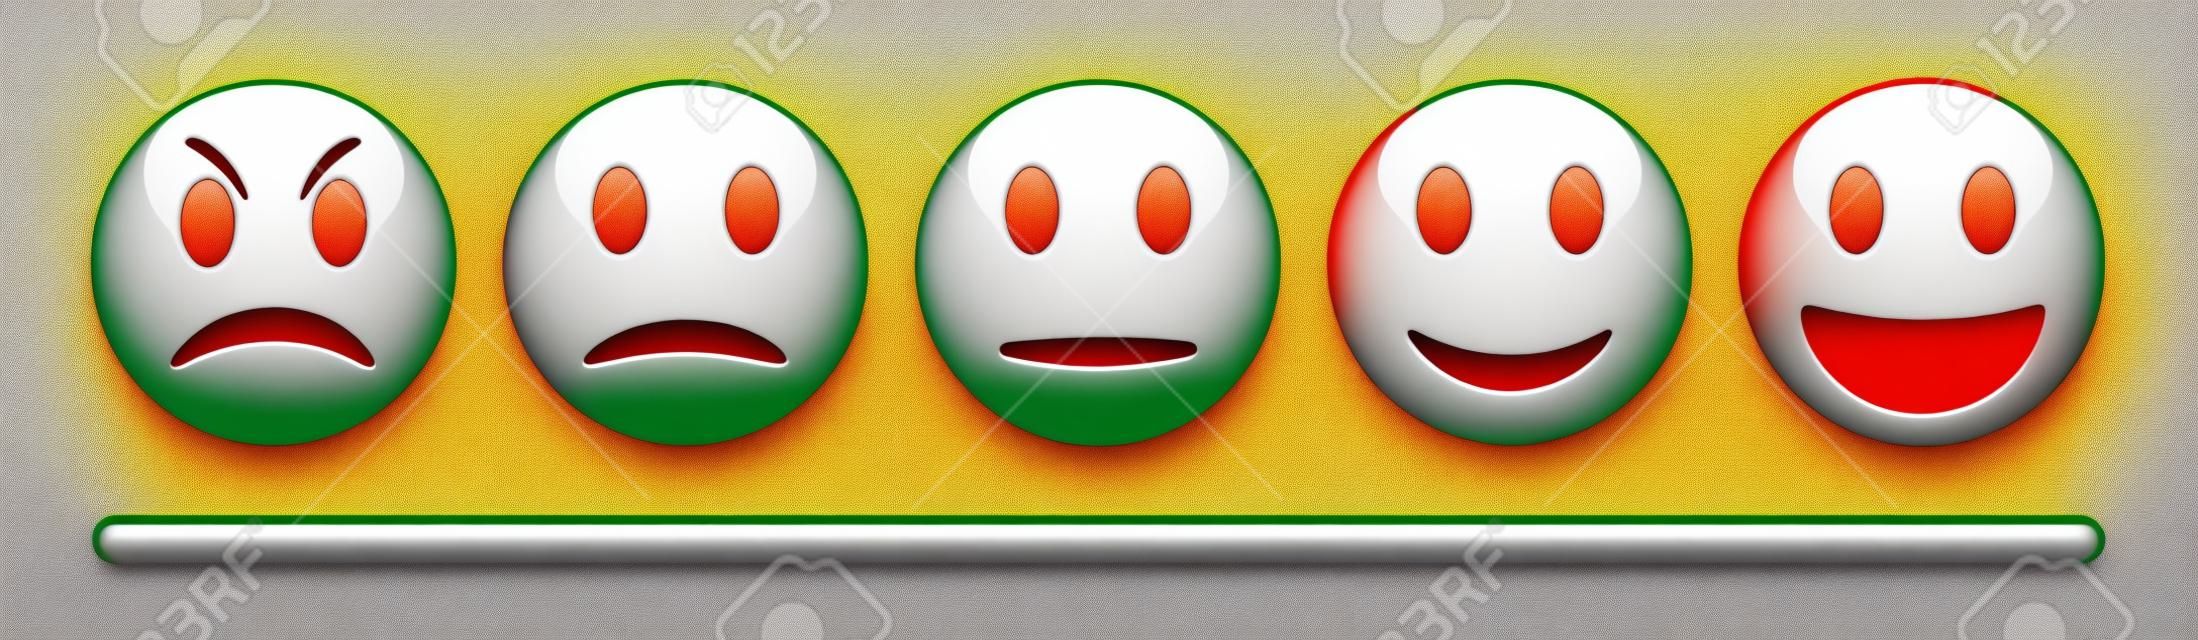 Vector emotie feedback schaal op witte achtergrond. Boos, verdrietig, neutraal en gelukkig emoticon set. Glanzend rood, oranje, geel en groen grappige cartoon Emoji pictogram. 3D-illustratie